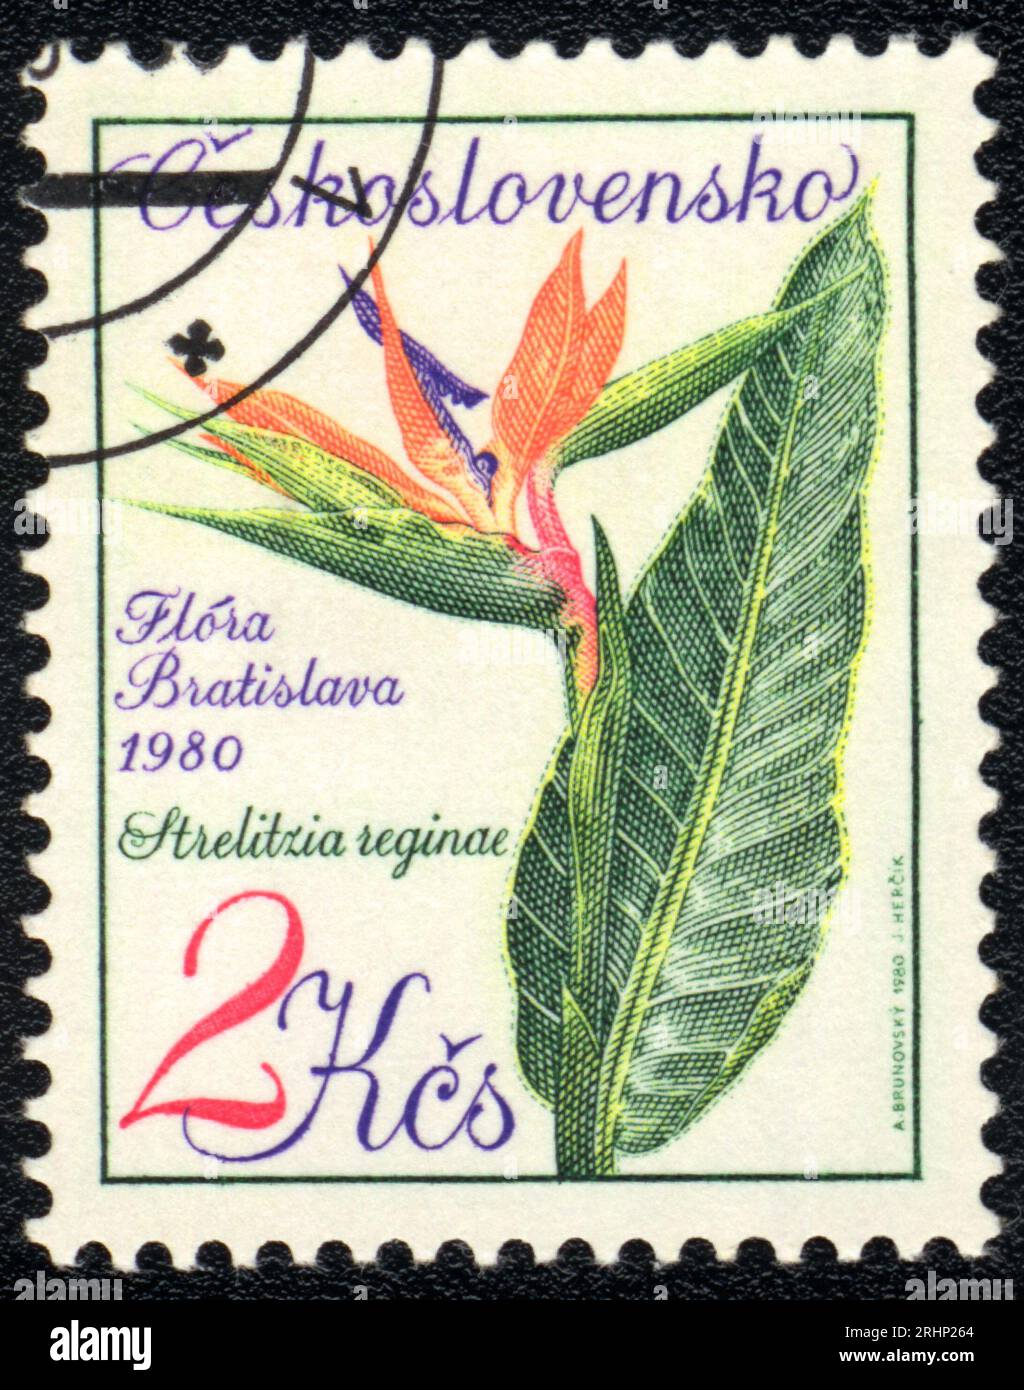 Ein in der Tschechoslowakei gedruckter Stempel zeigt das Bild der Kranichblume Strelitzia reginae, Flora Bratislava, 1980 Stockfoto